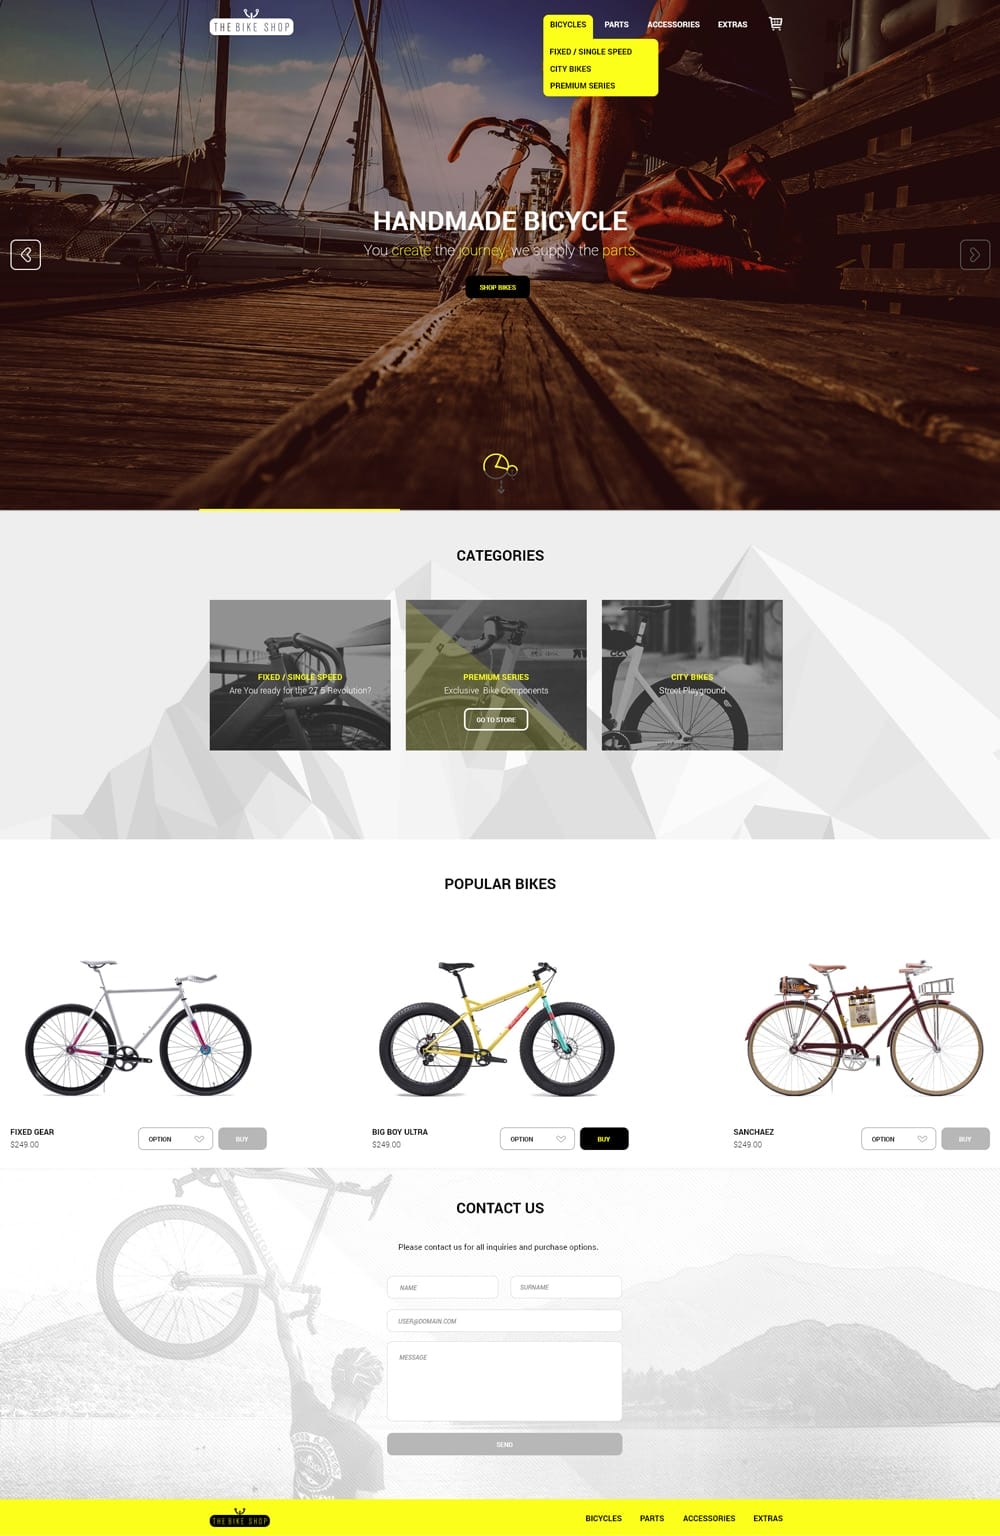 The Bike Shop Free Home Page PSD